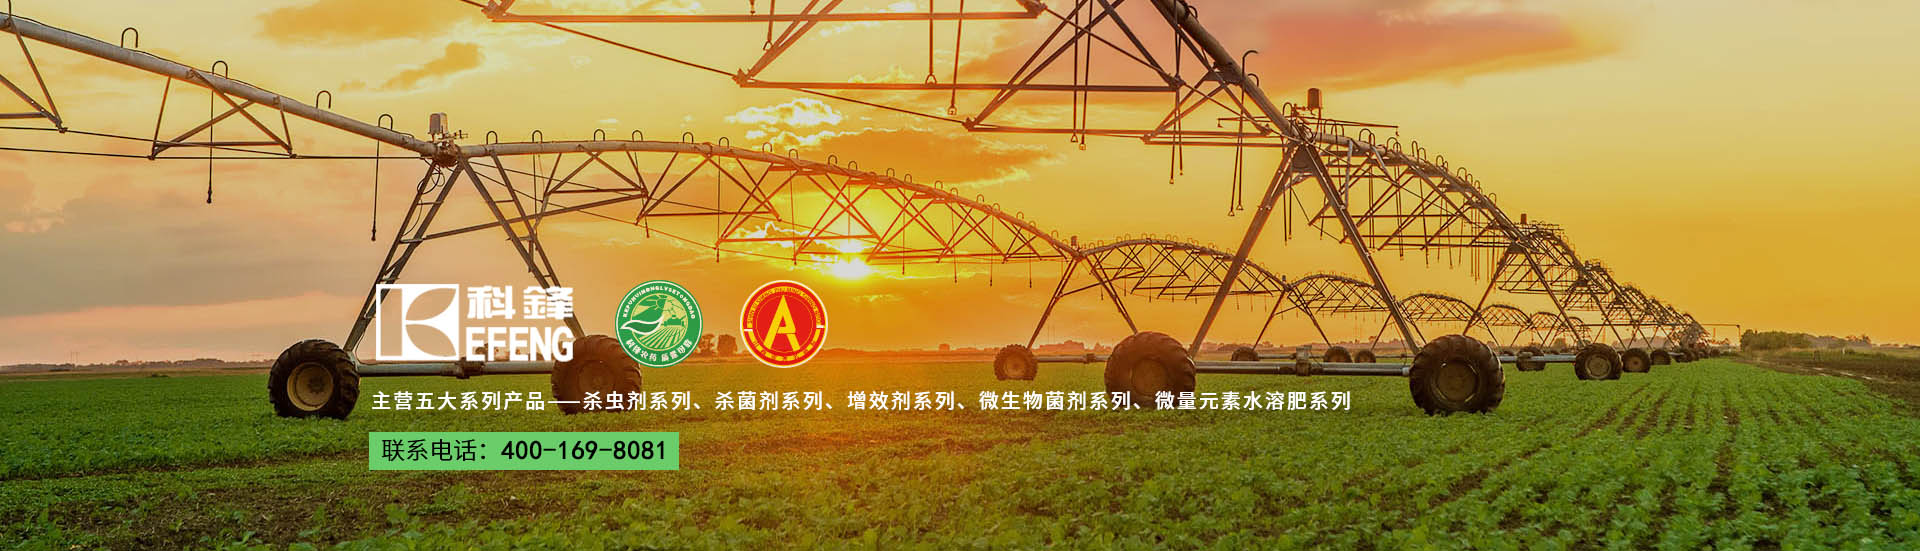 Z6尊龙·凯时(中国)-官方网站_活动2015